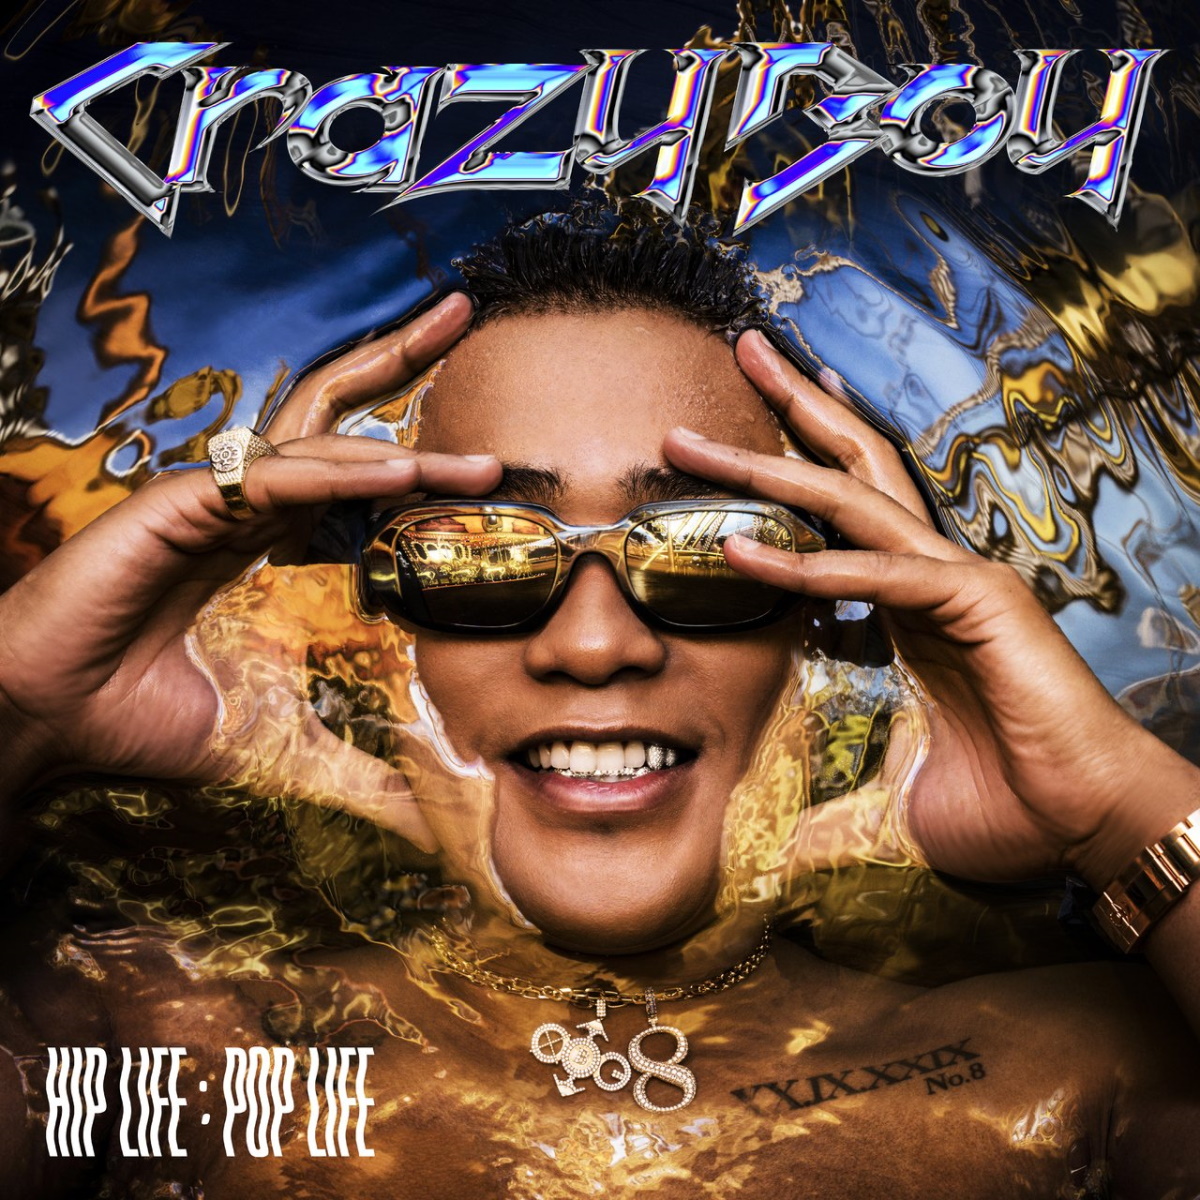 『CrazyBoy - OK OK (feat. Yo-Sea) 歌詞』収録の『HIP LIFE：POP LIFE』ジャケット